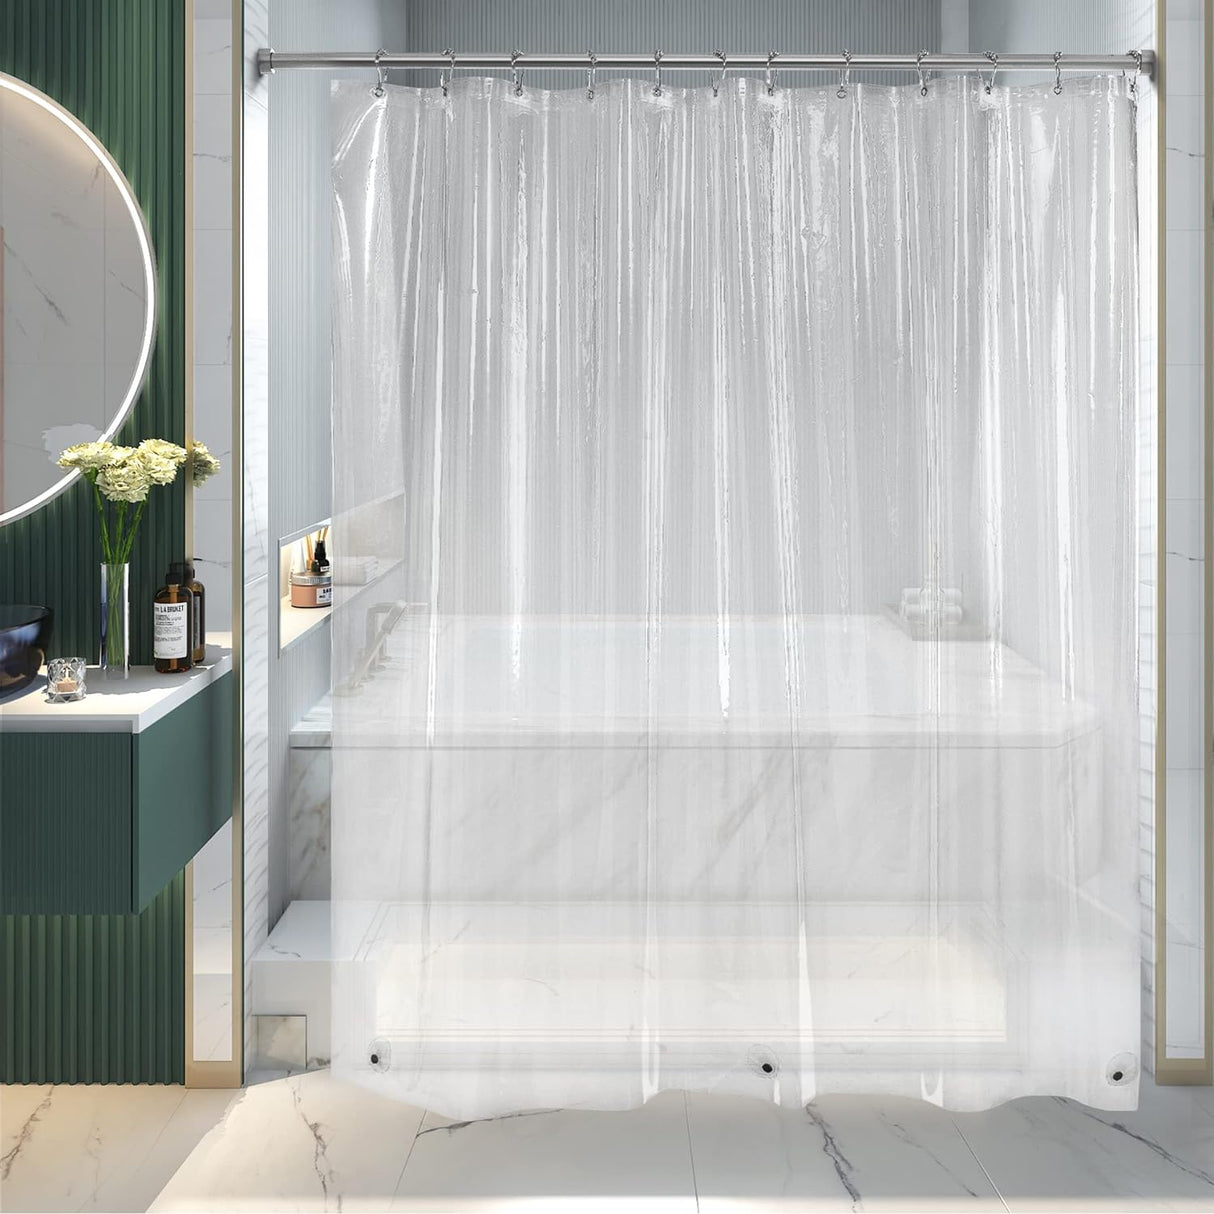 AmazerBath 3G Clear Shower Curtain Liner, Waterproof PEVA Shower Curtain Liner for Bathroom